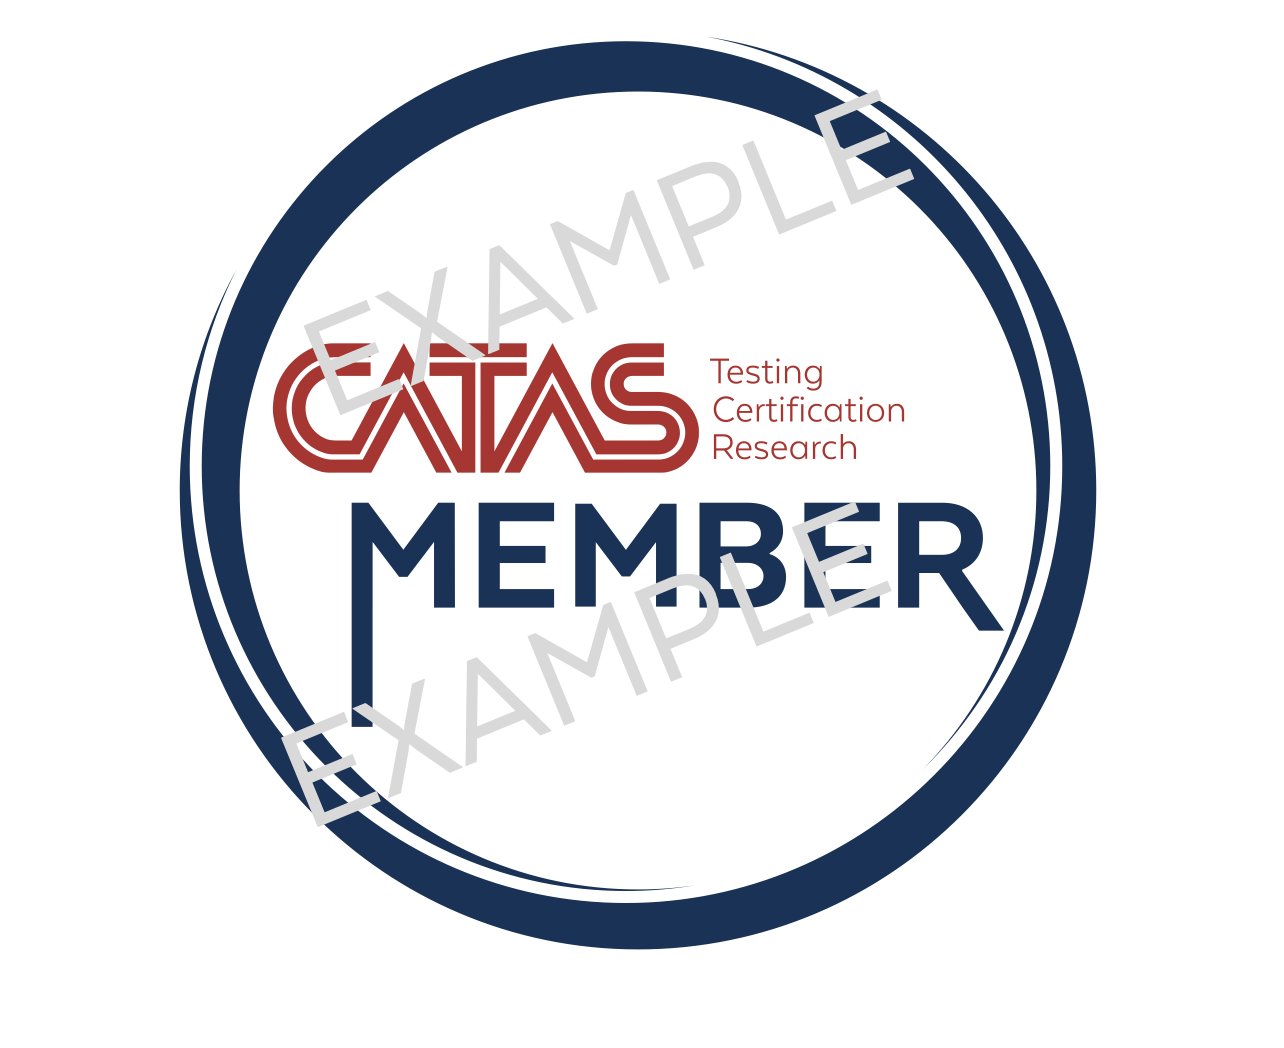 CATAS Memeber logo Example